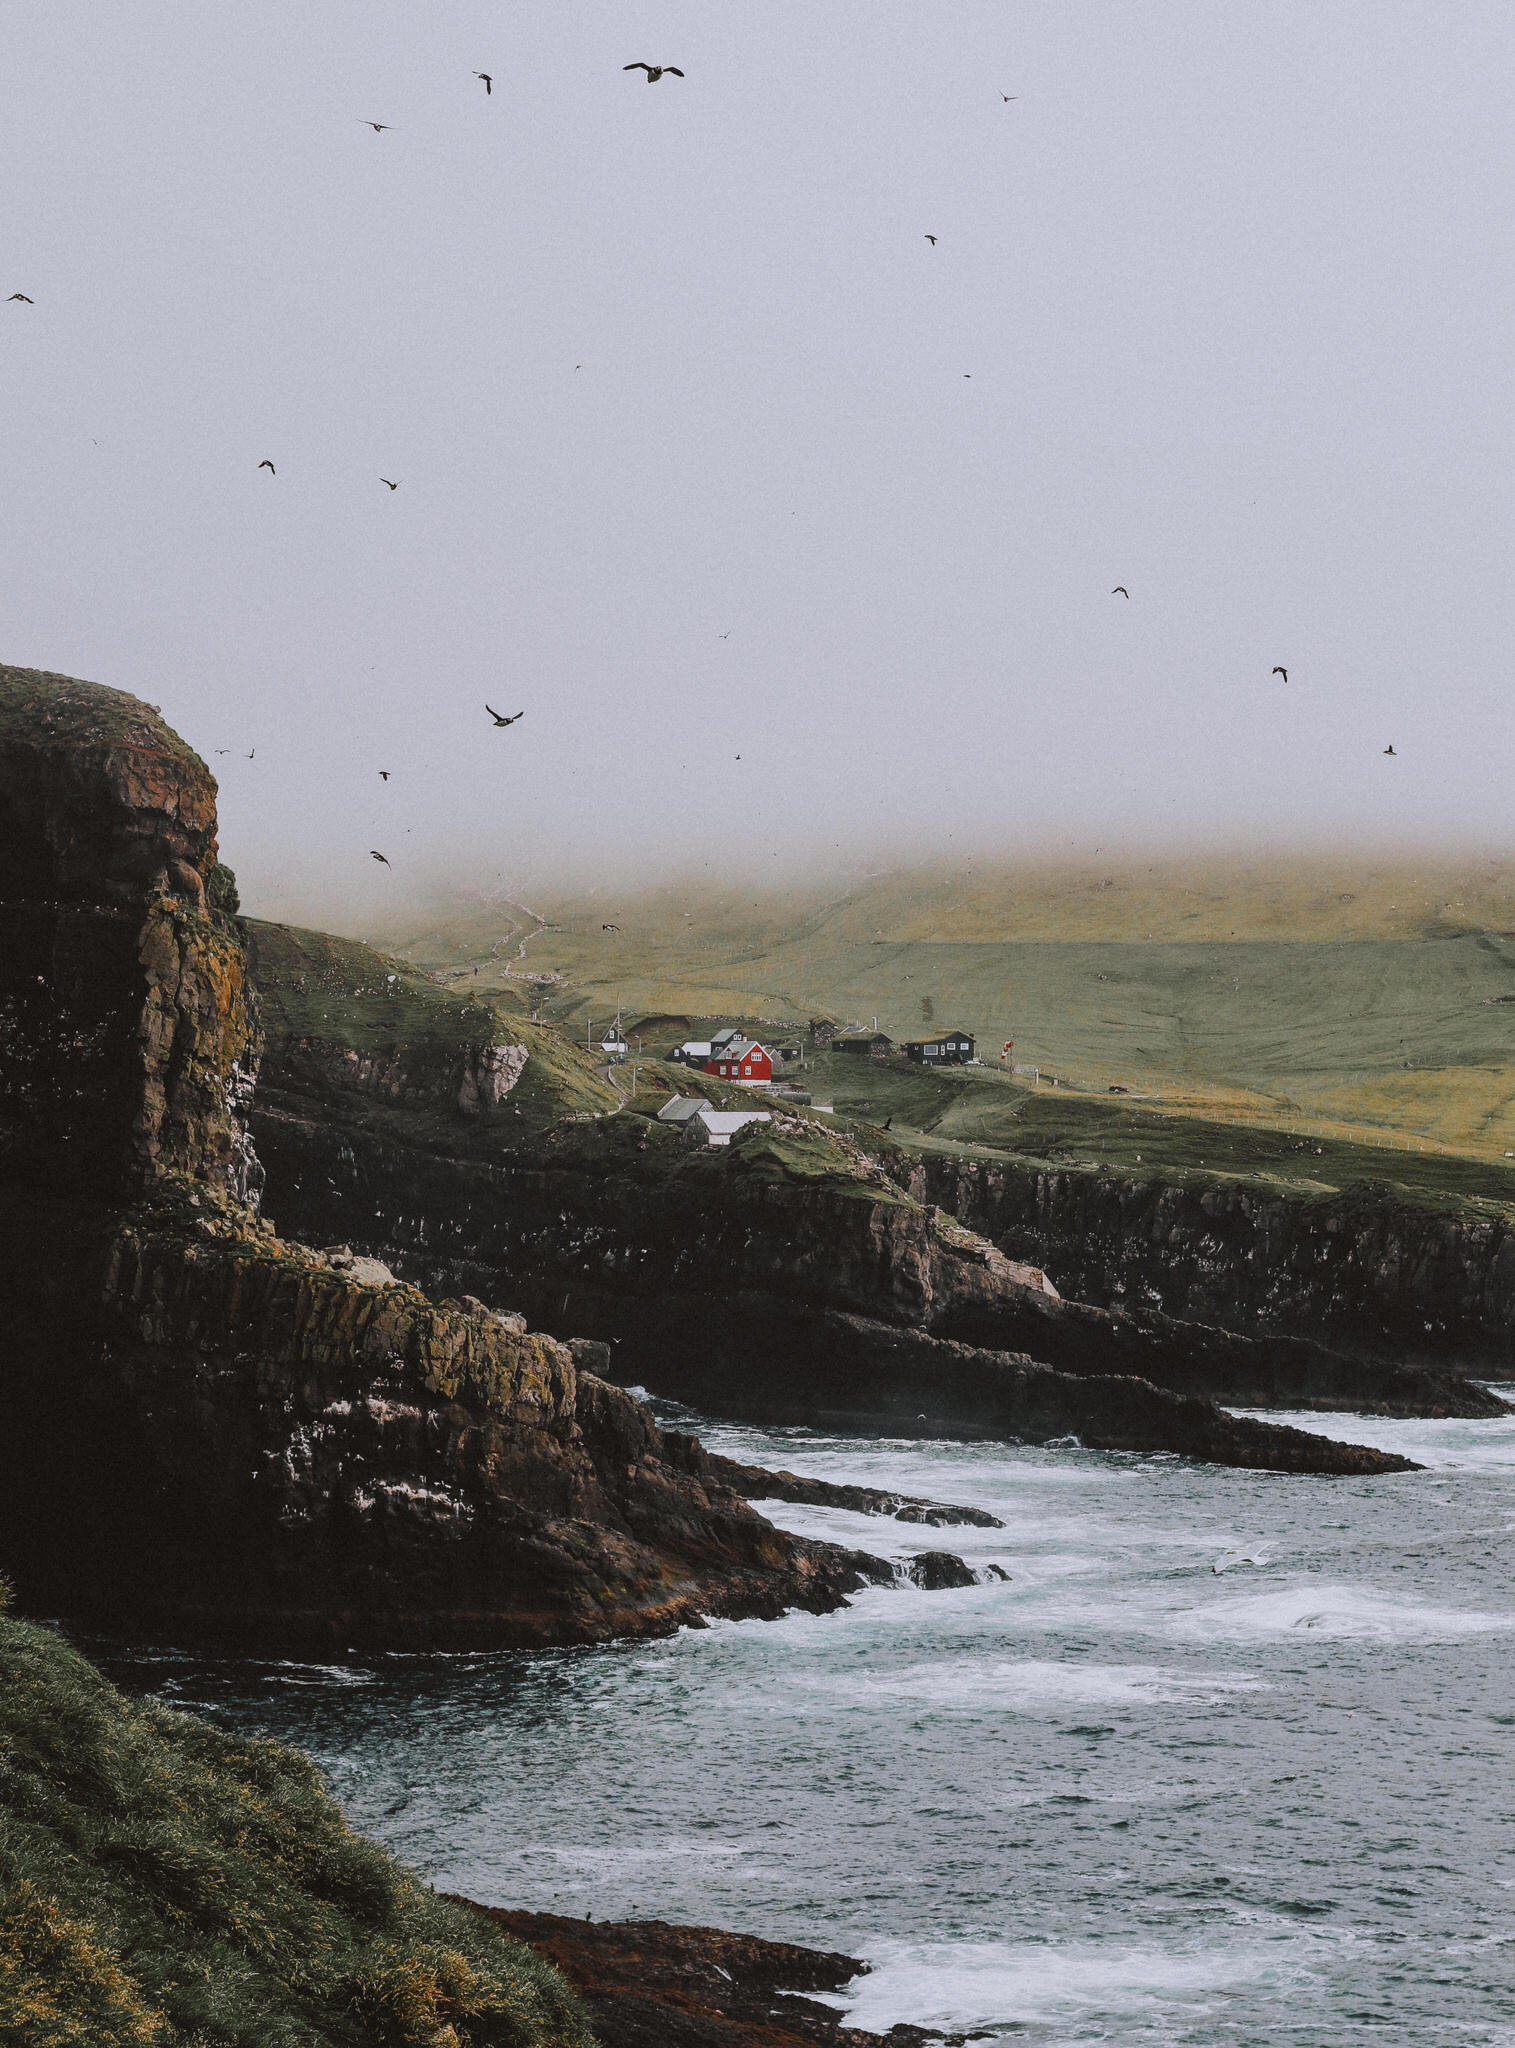  Chỉ có 3 đường bay thẳng đến Faroe từ Edinburg (Scotland), Iceland và thủ đô Copenhagen của Đan Mạch. Nếu bạn không thích bay và có dư dả thời gian, có nhiều chuyến tàu từ các quốc gia Bắc Âu, nhưng cần phải chú ý đến điều kiện thời tiết của biển 